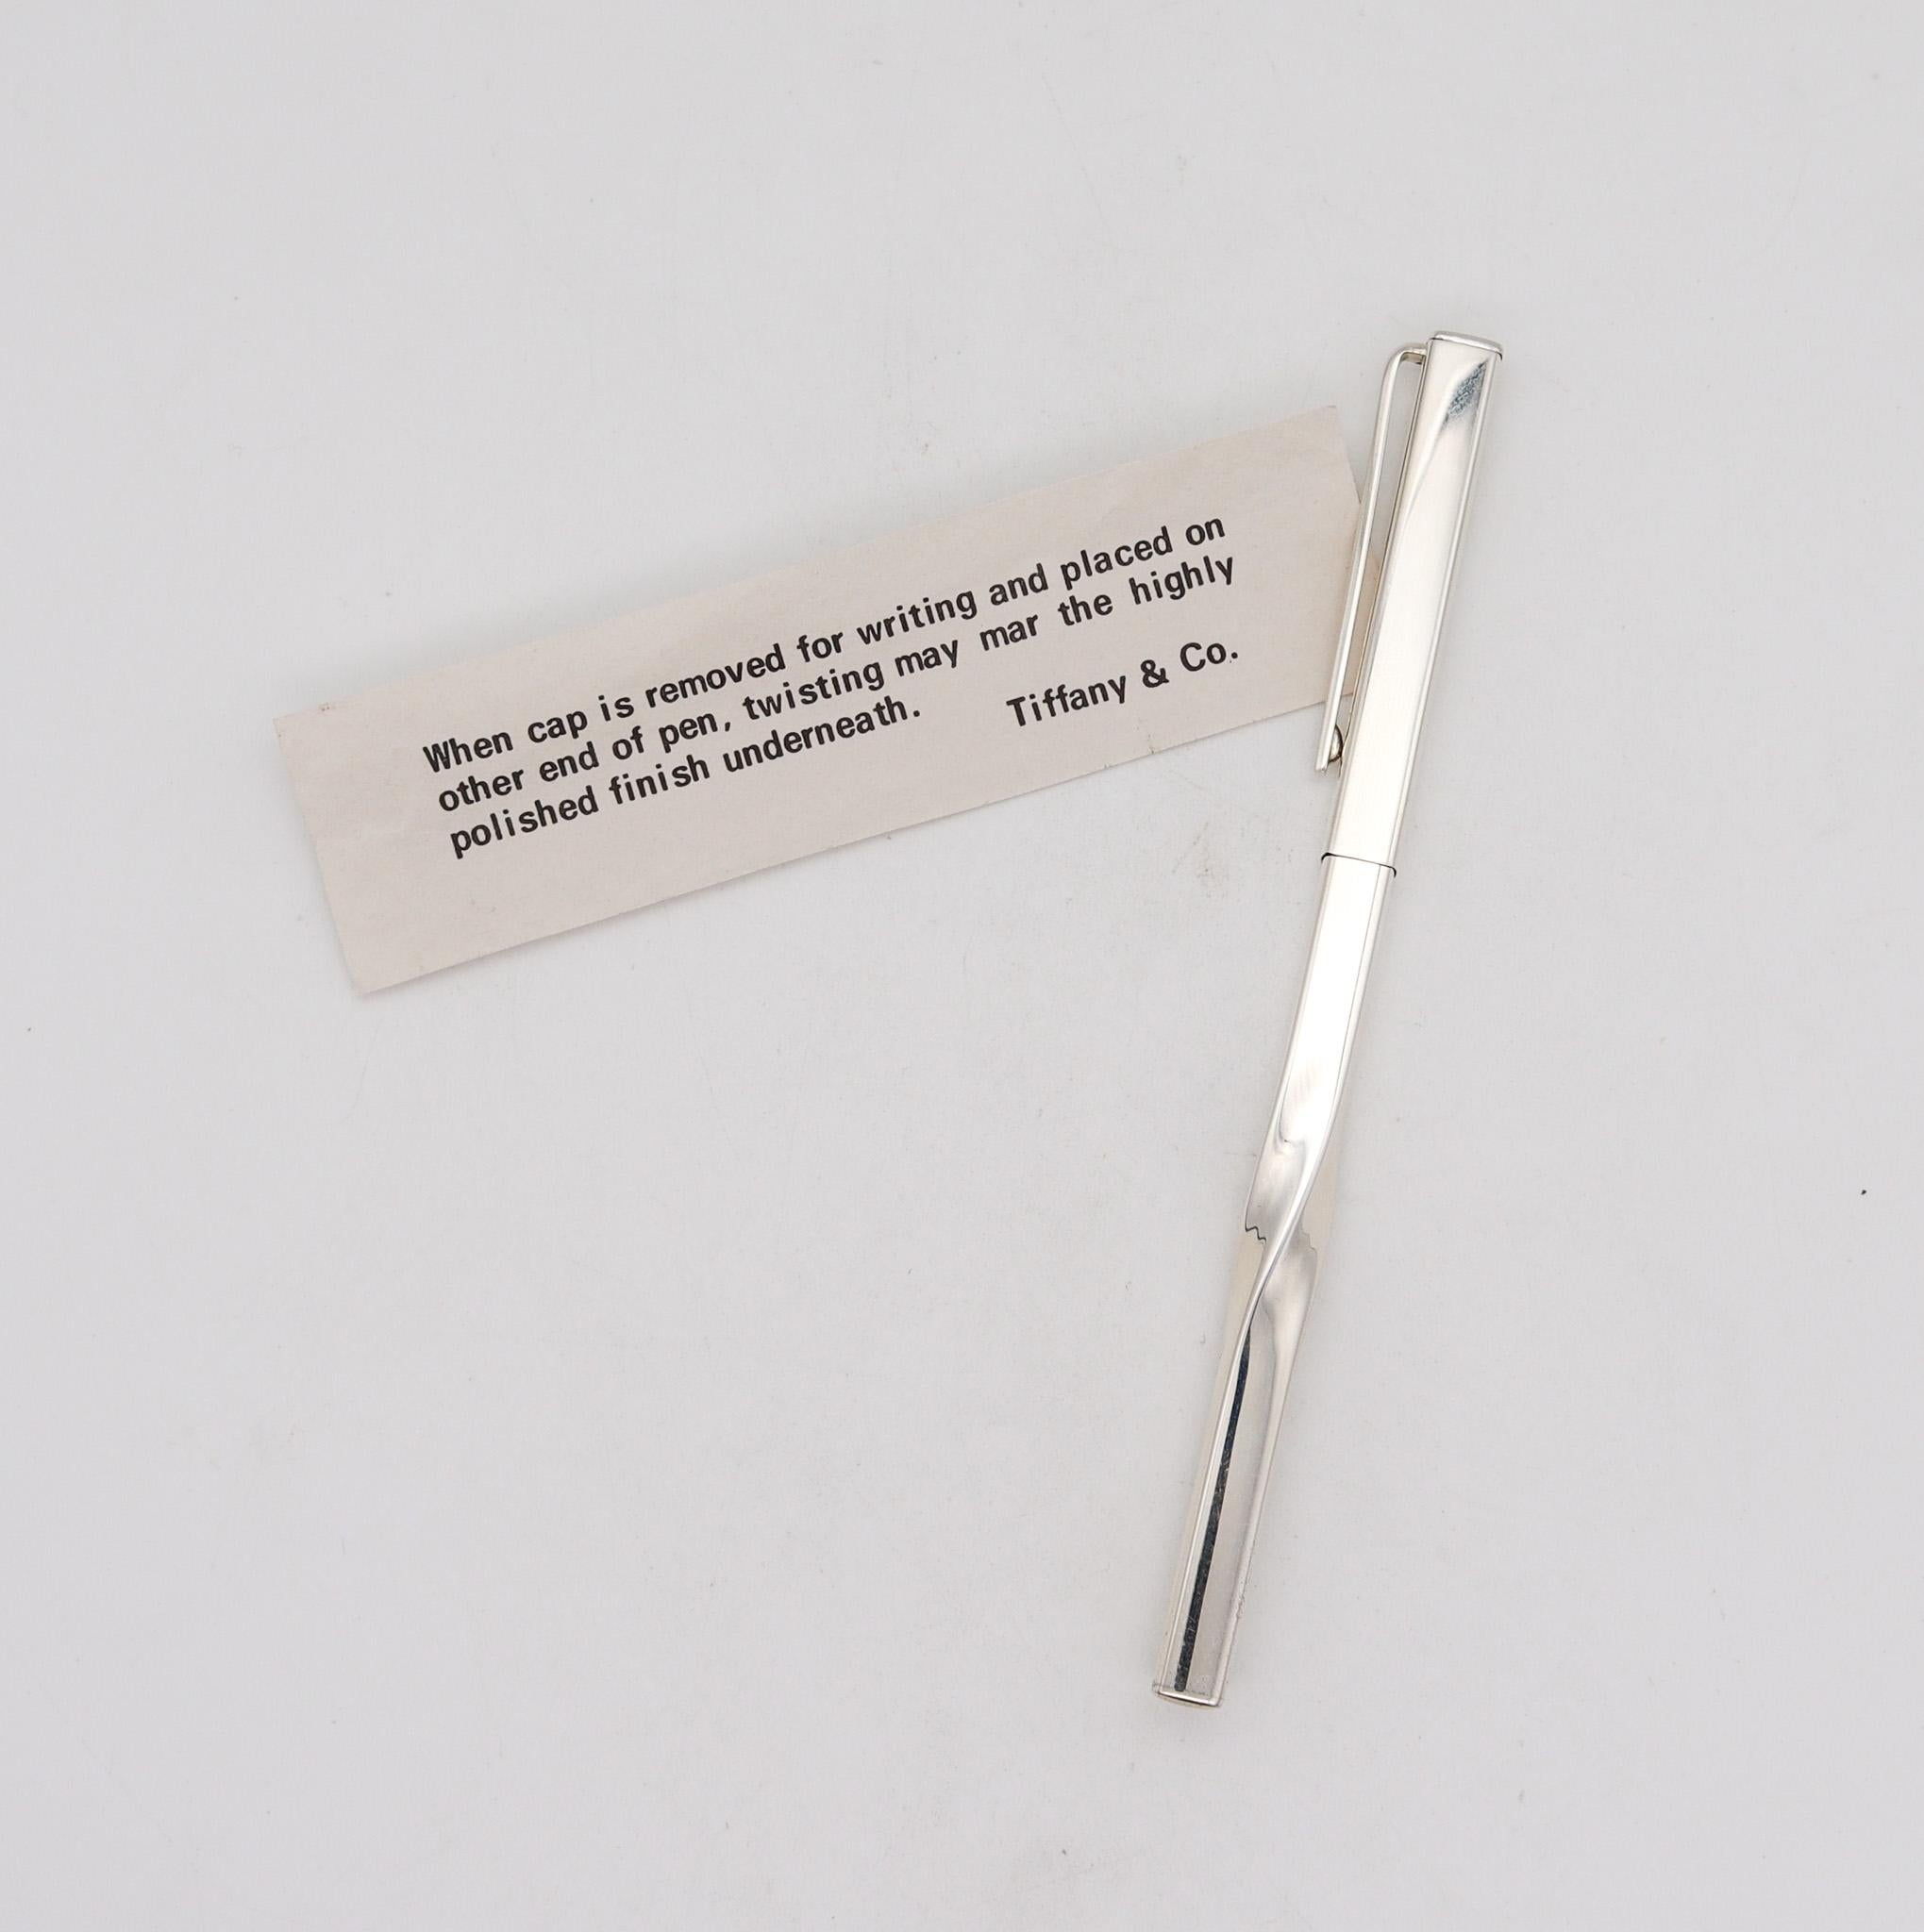 Skulpturaler, gedrehter Stift, entworfen von Angela Cummings.

Skulpturaler Stift, der 1981 in den Tiffany Studios in New York City geschaffen wurde. Dieser fabelhafte skulpturale Stift wurde von Angela Cummings mit einem schlichten, eleganten,